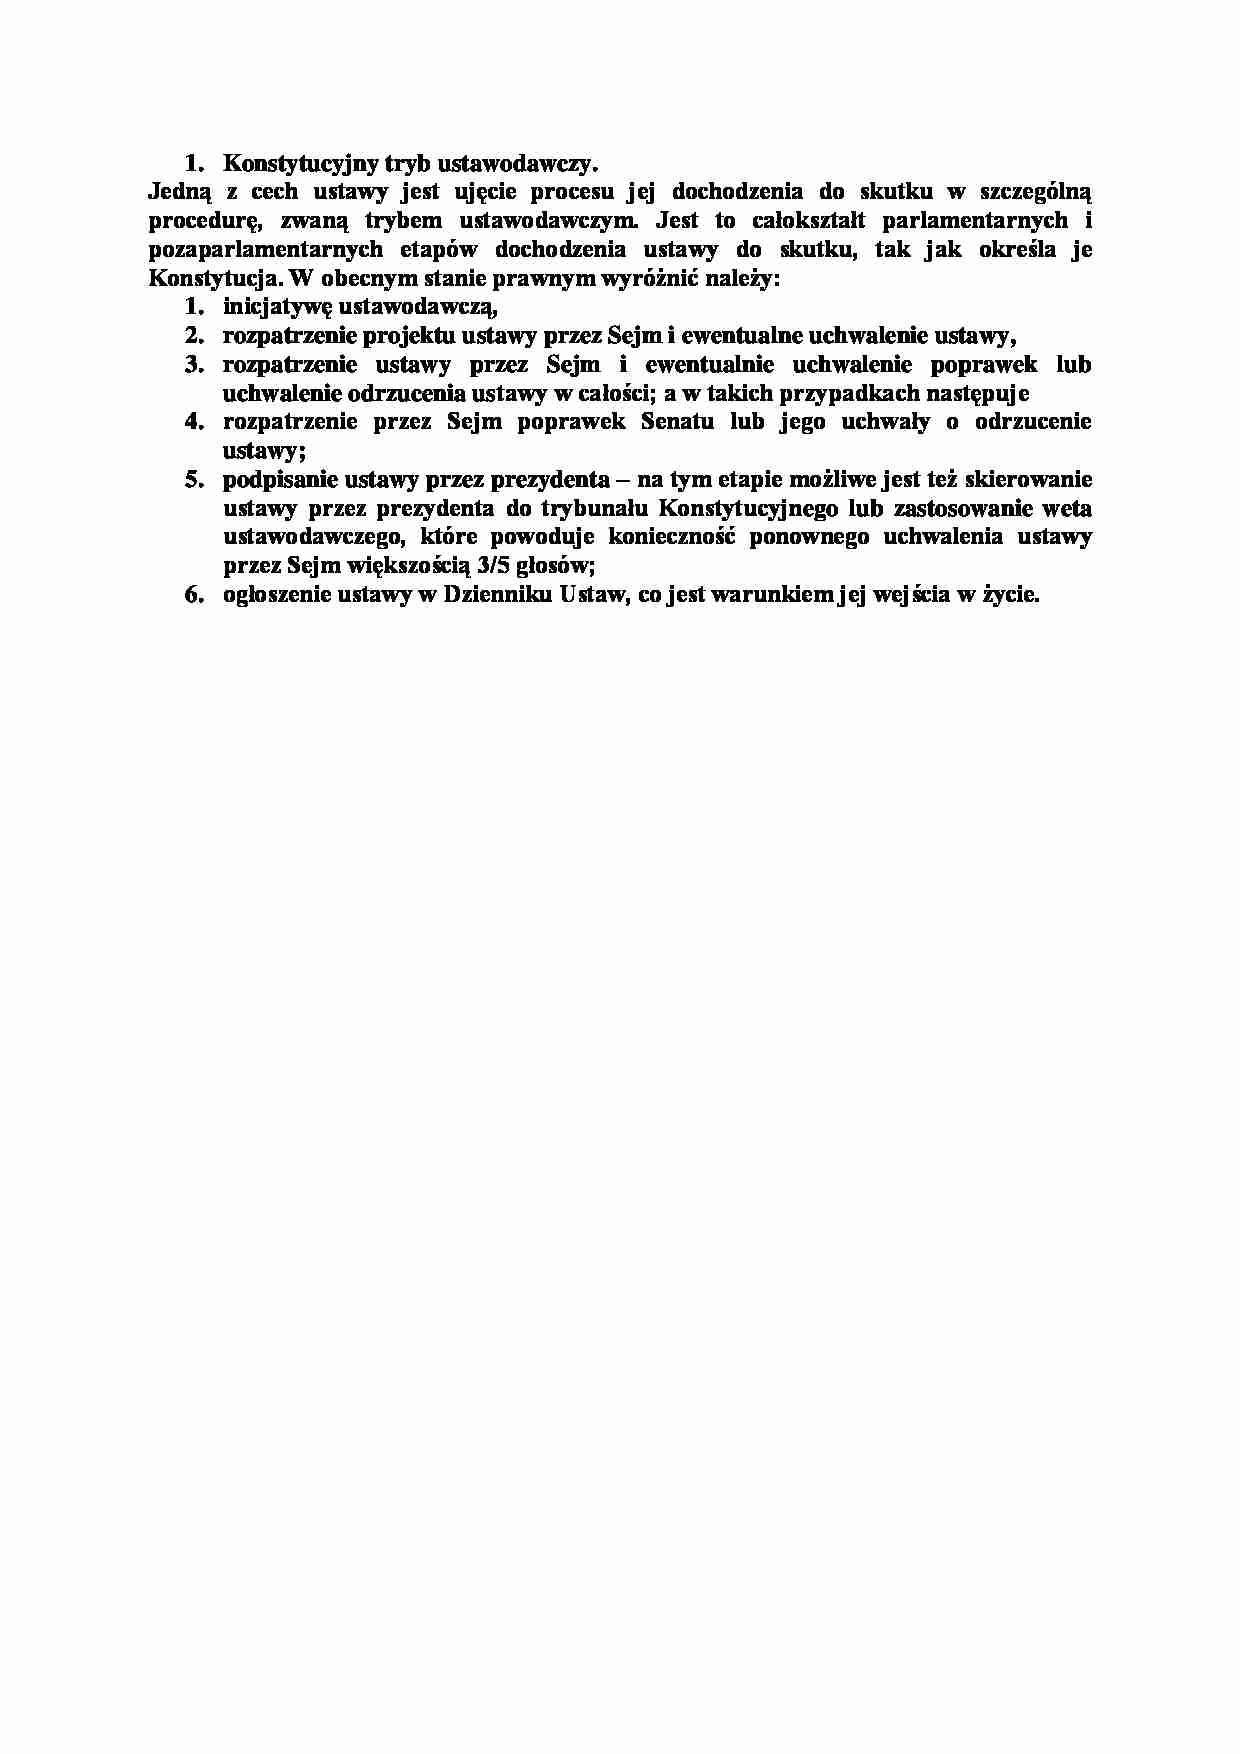 Konstytucyjny tryb ustawodawczy-opracowanie - strona 1